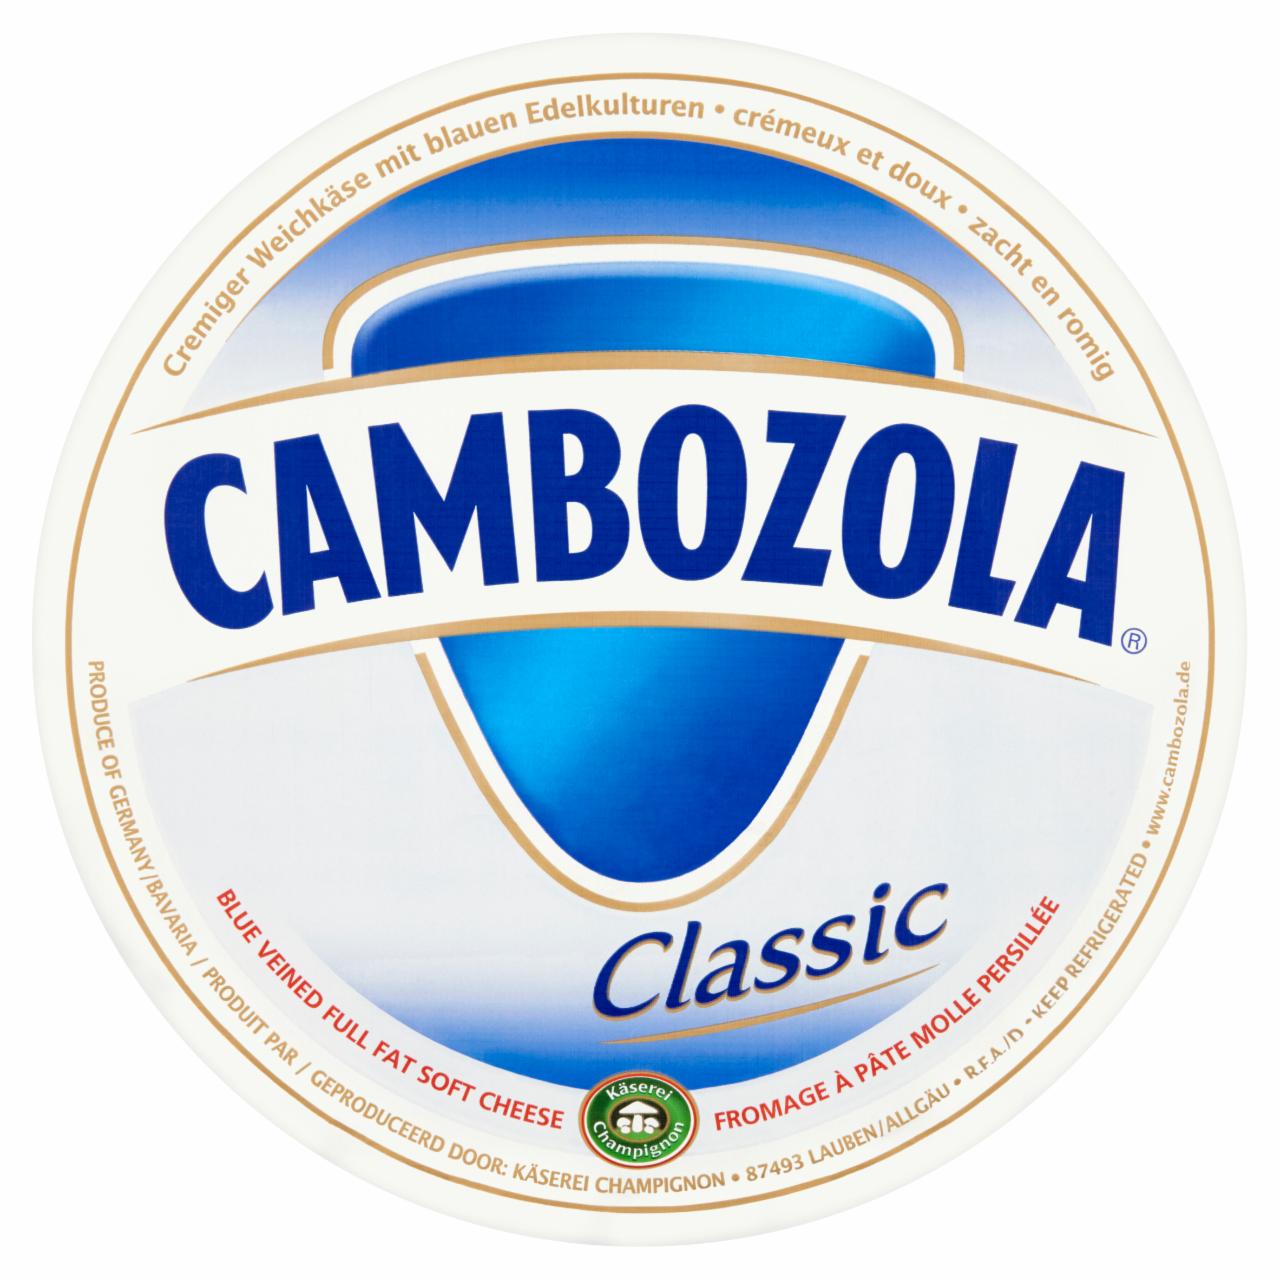 Képek - Cambozola Classic natúr, kék nemespenésszel érő, zsírdús lágy tortasajt